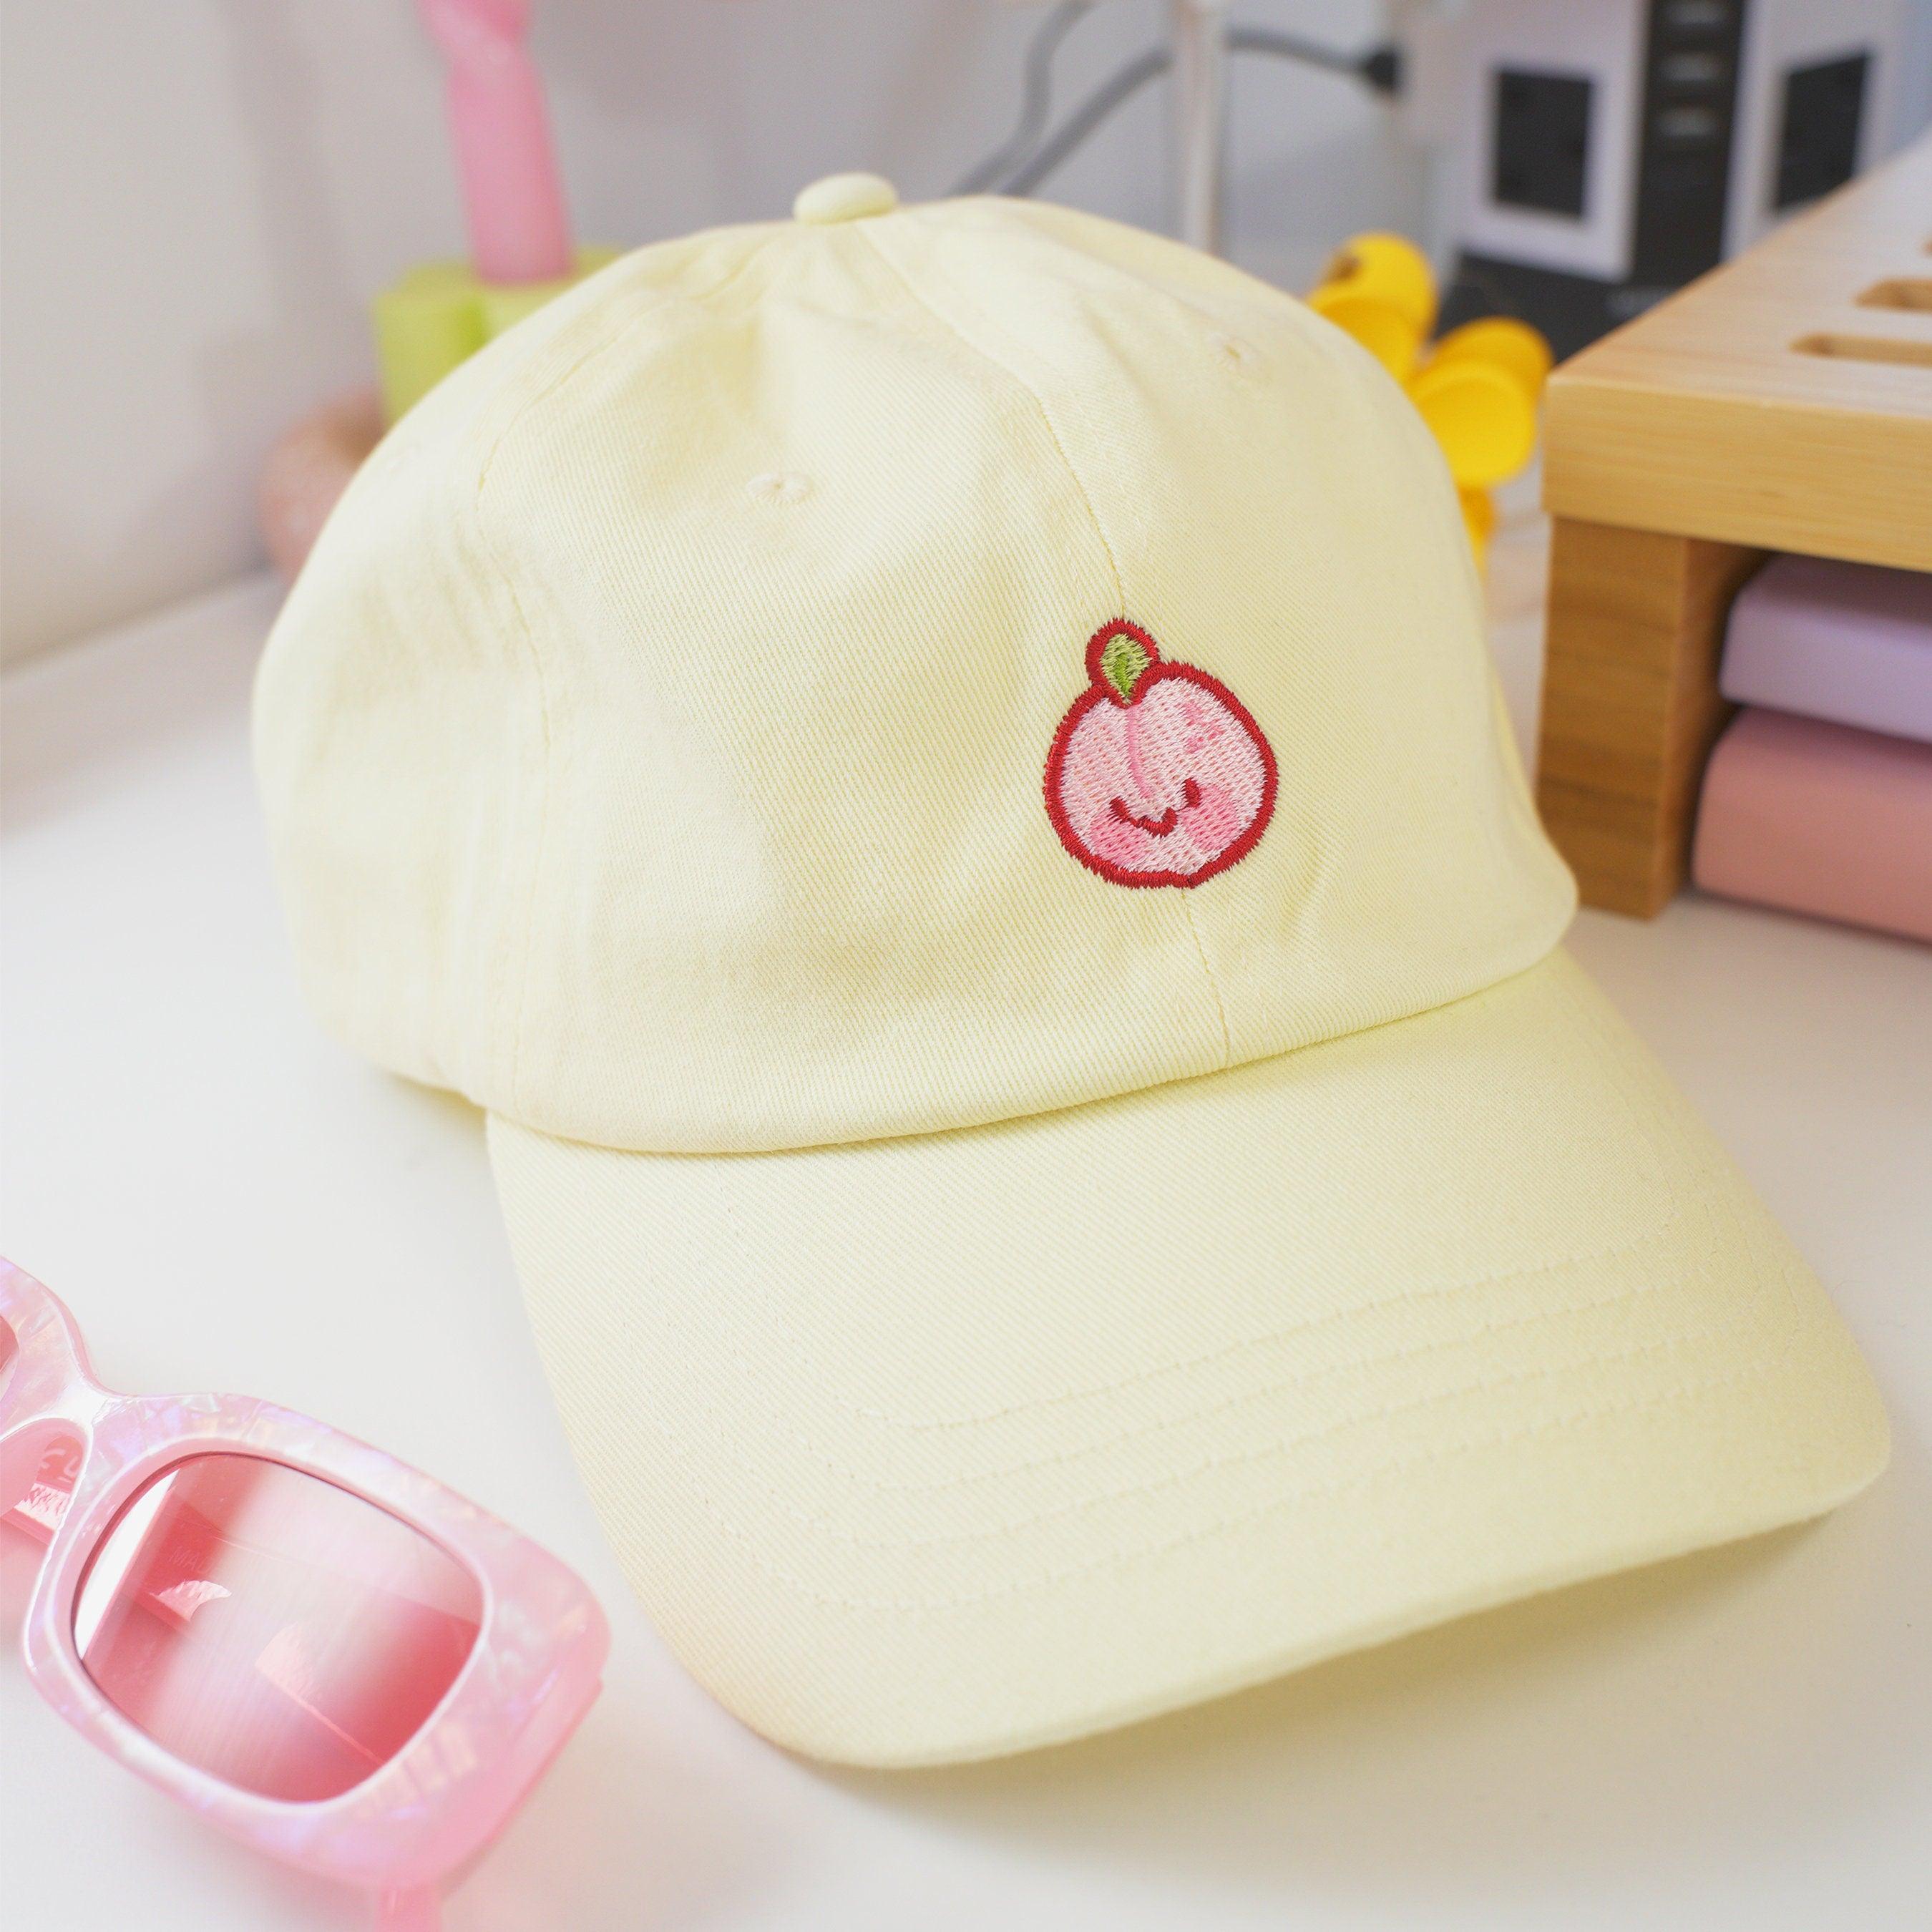 Kawaii Pastel Yellow Peach Cap ~ Cute Low Profile Cap - Katnipp Illustrations